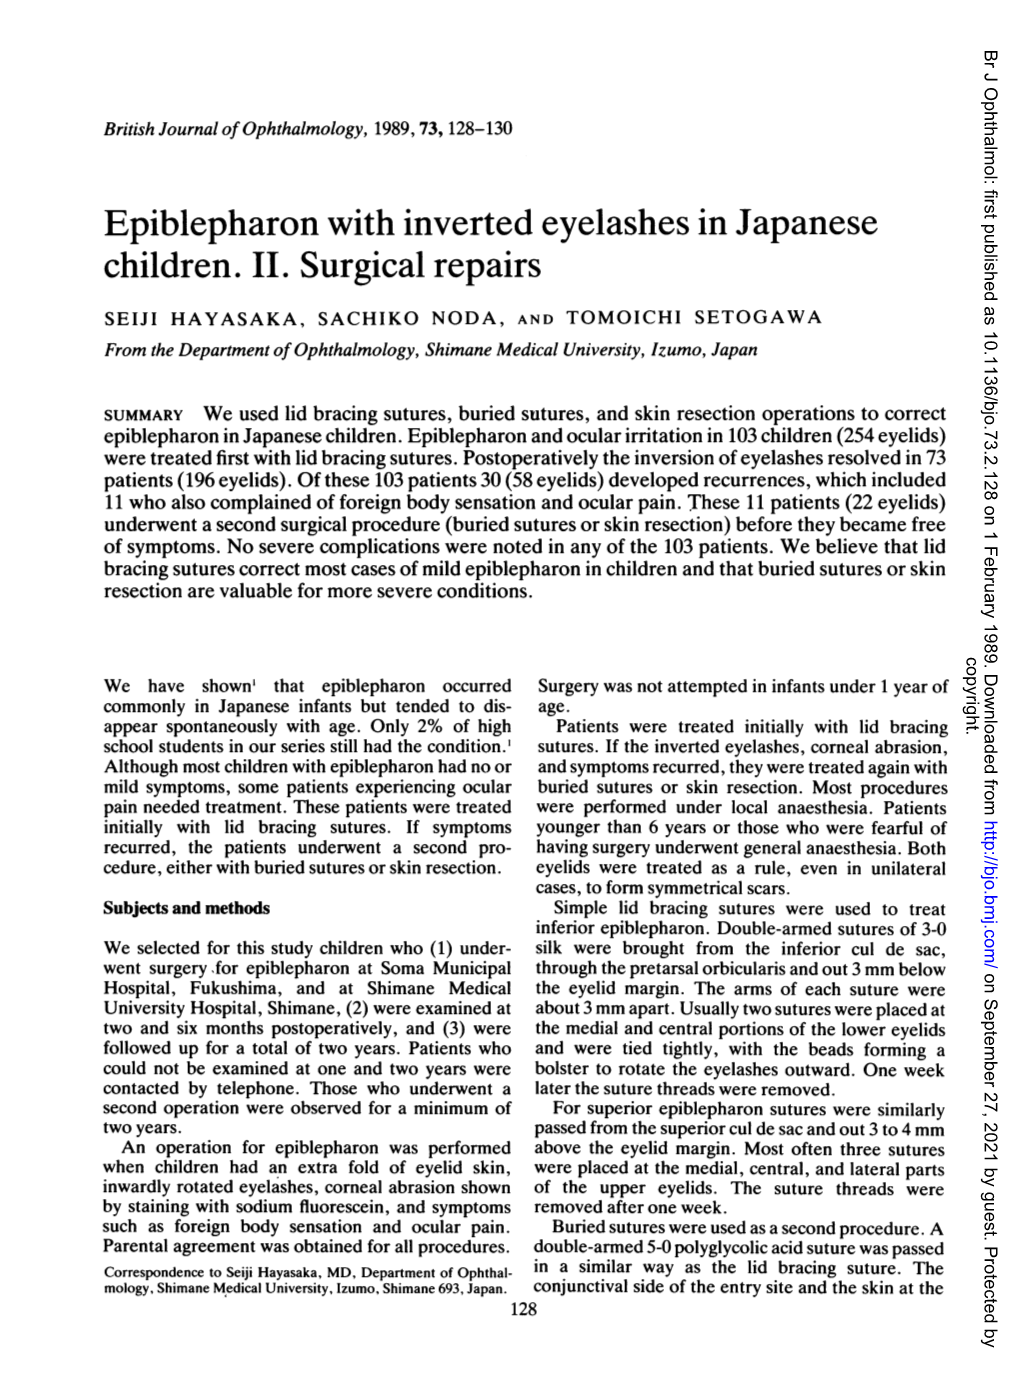 Epiblepharon with Inverted Eyelashes in Japanese Children